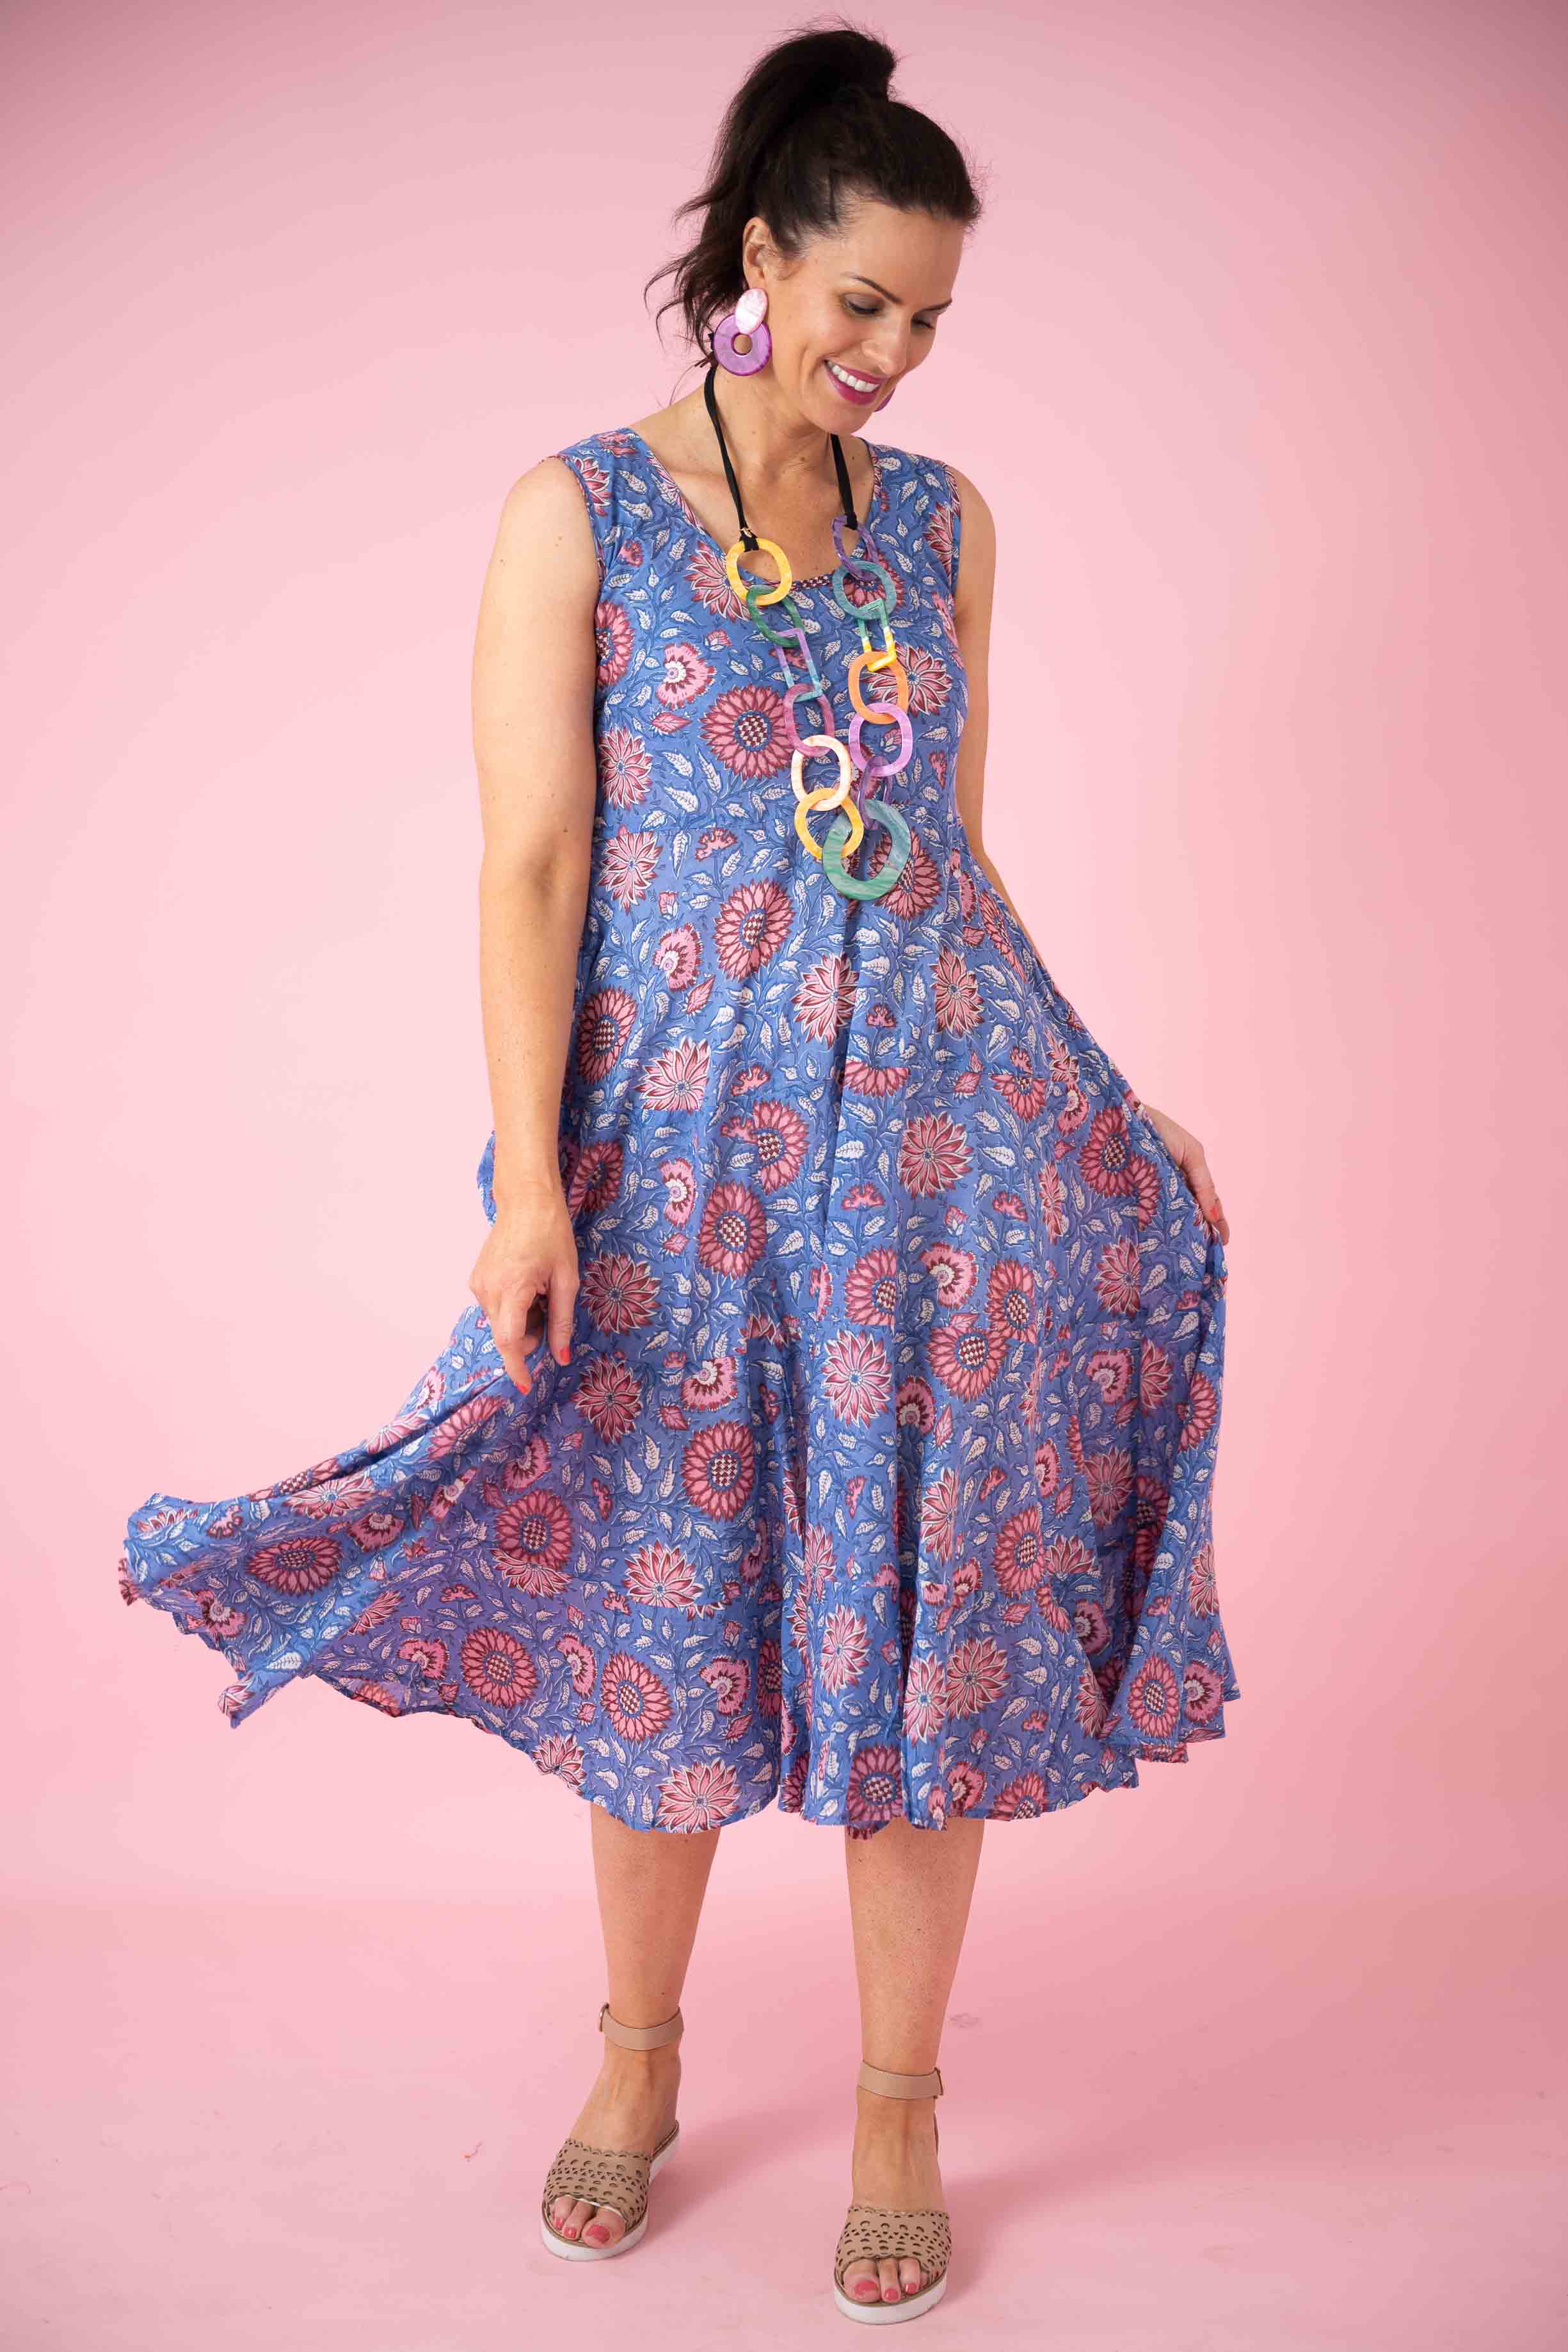 Goa bohemian Girl | Beautiful bohemian dresses, Boho fashion, Boho chic  fashion